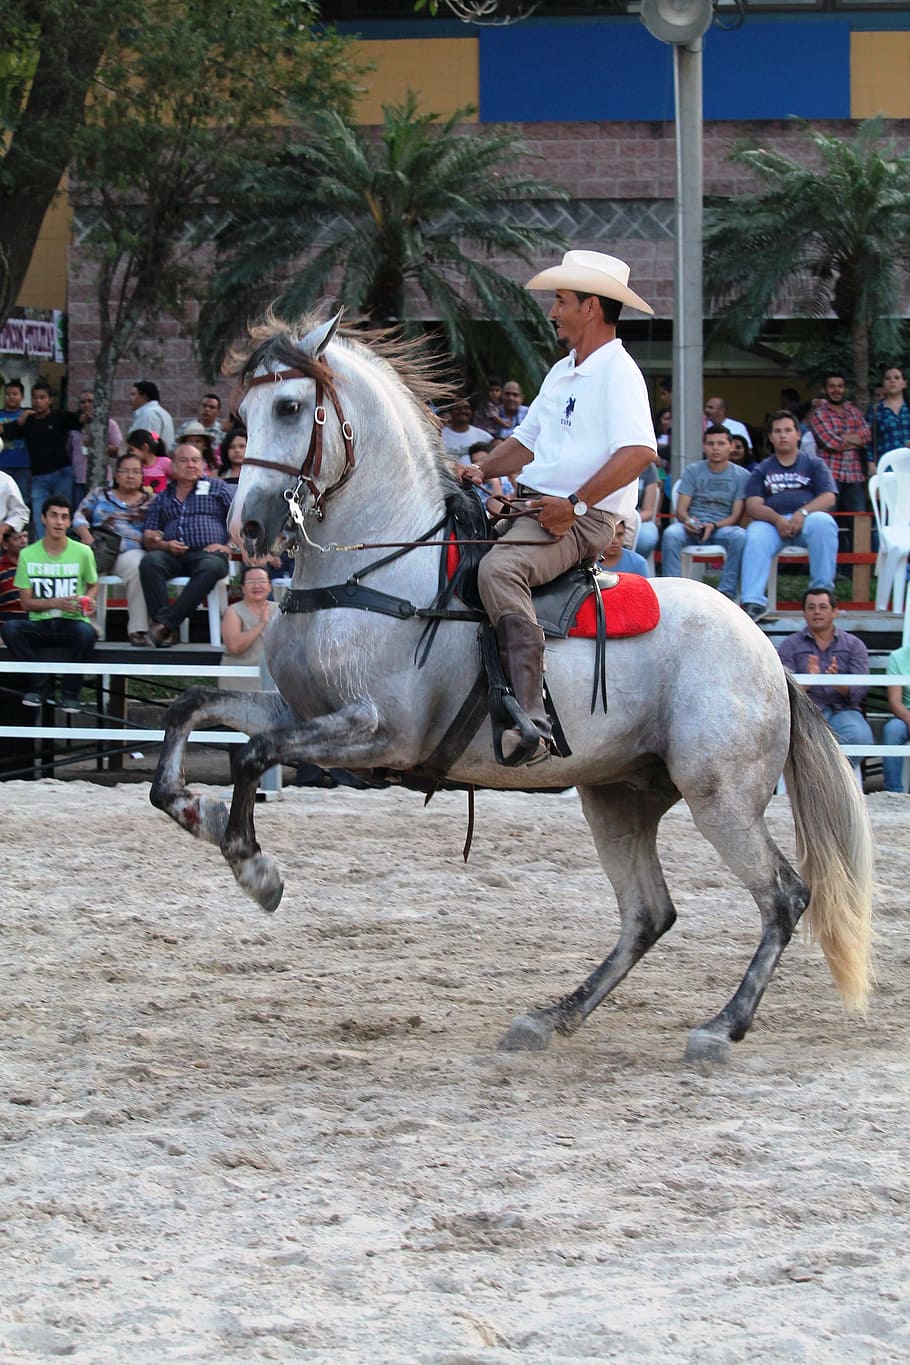 Vaquero, Caballo, Jinete, Fiesta, Animal, potro, establo, jaripeo, rodeo, equitación